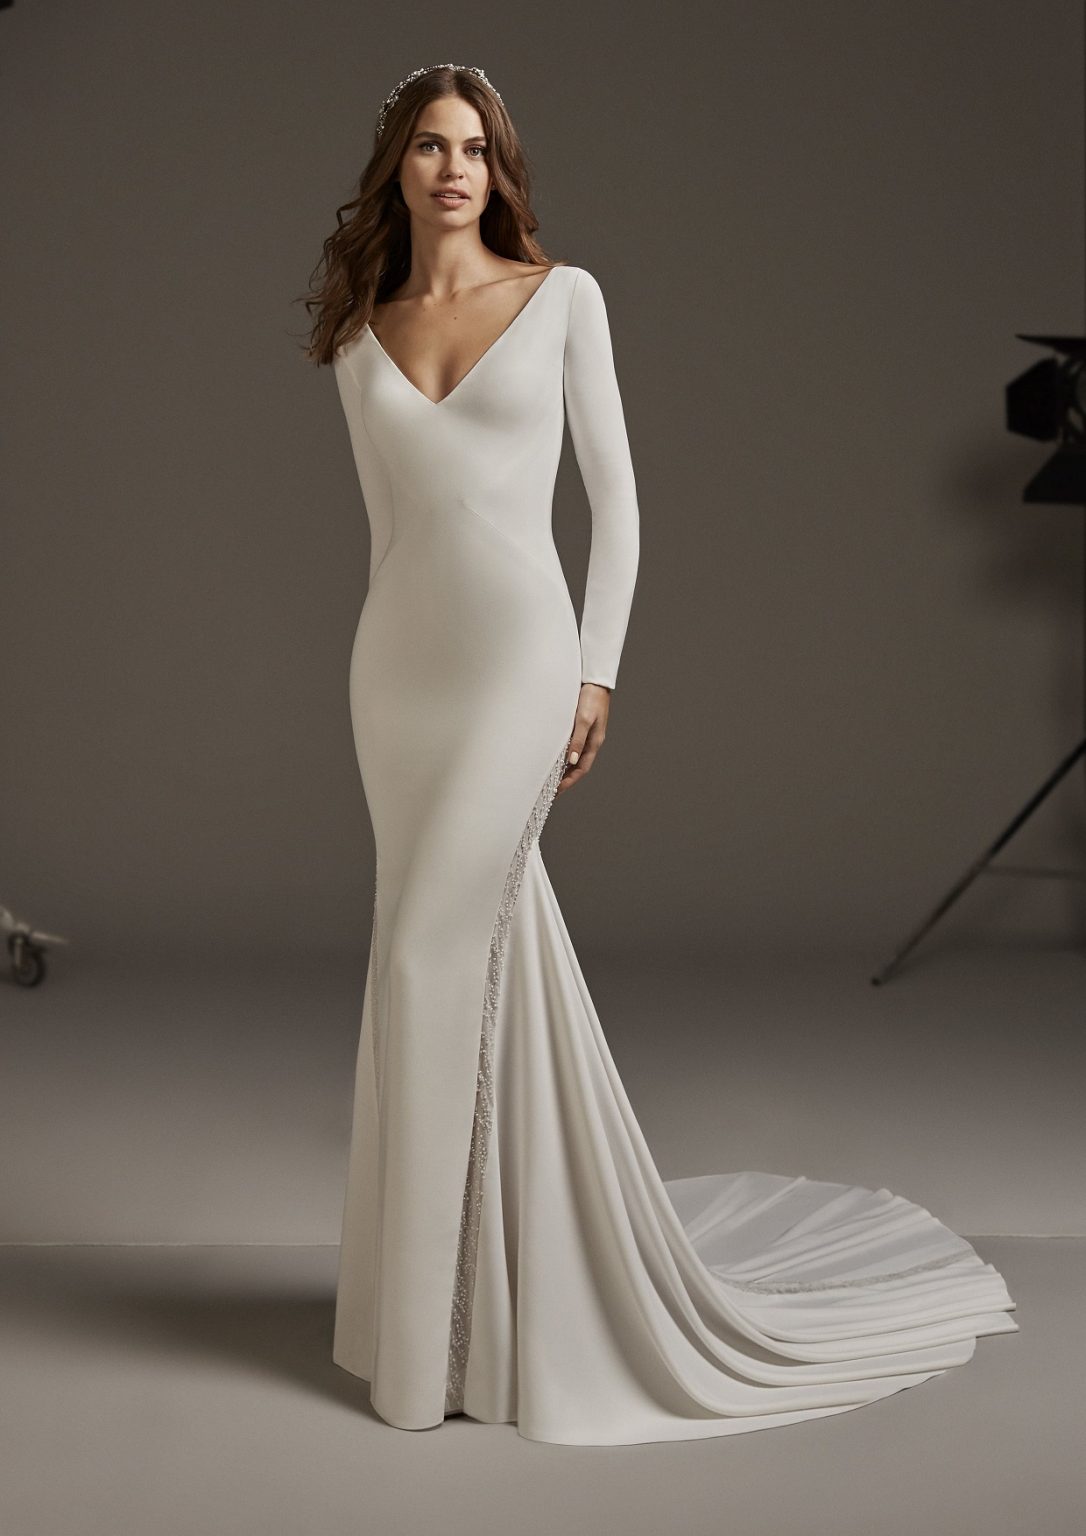 Minimal wedding gown with Scoop back neckline Modes Bridal NZ